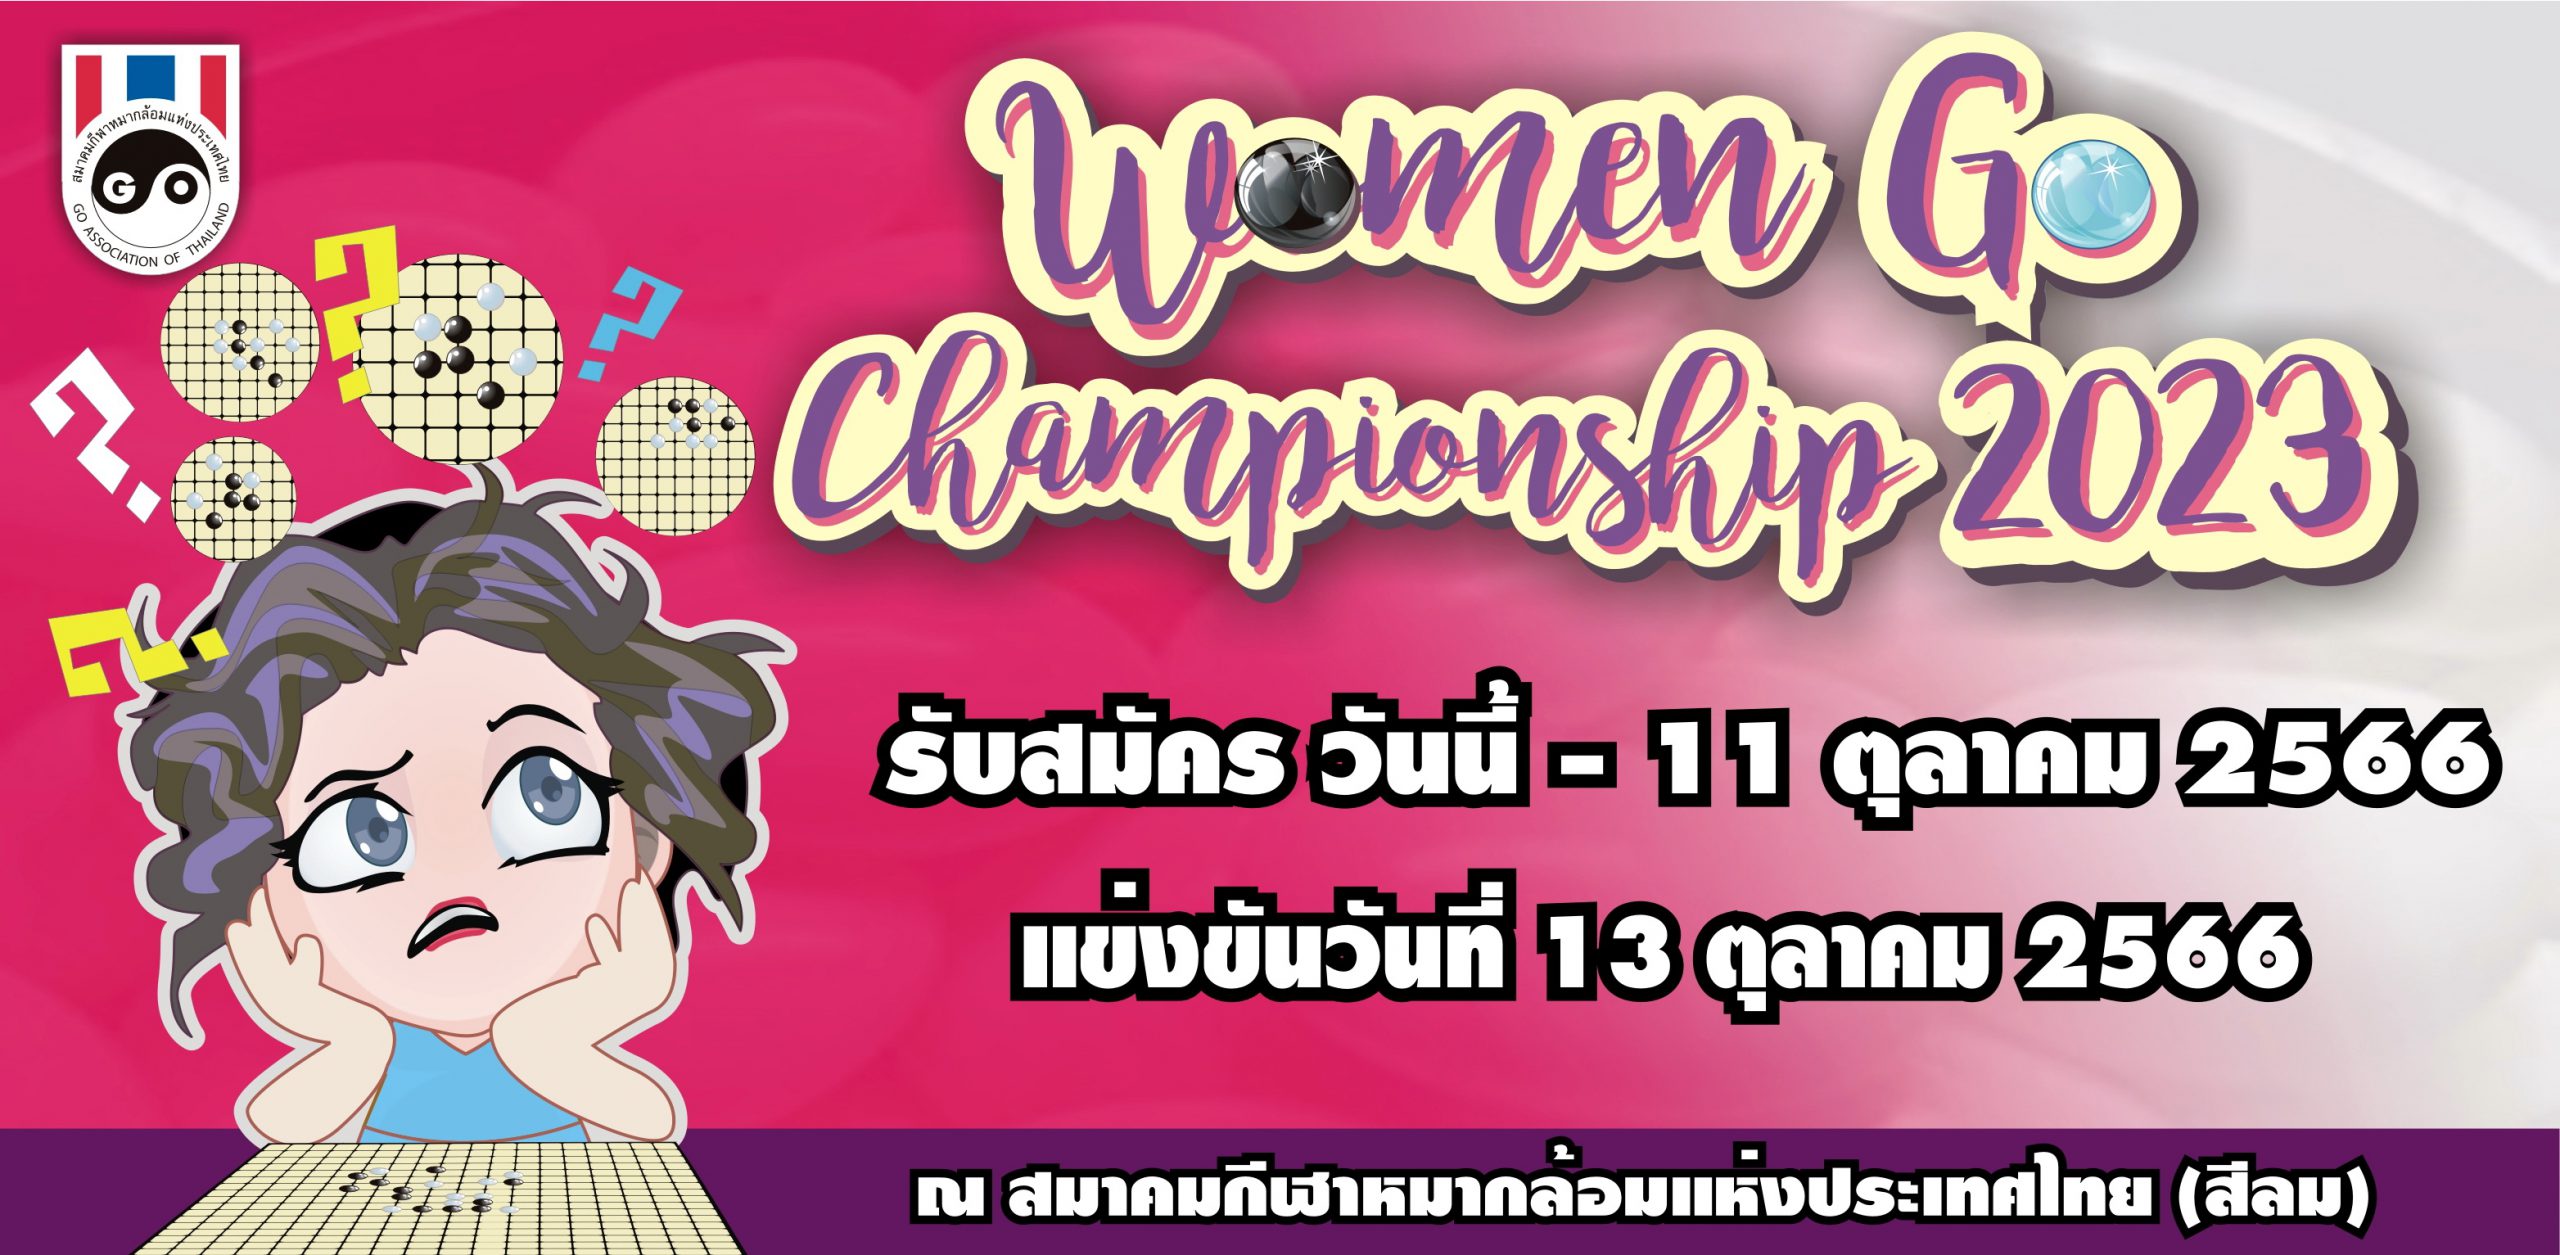 รับสมัคร Women Go Championship 2023